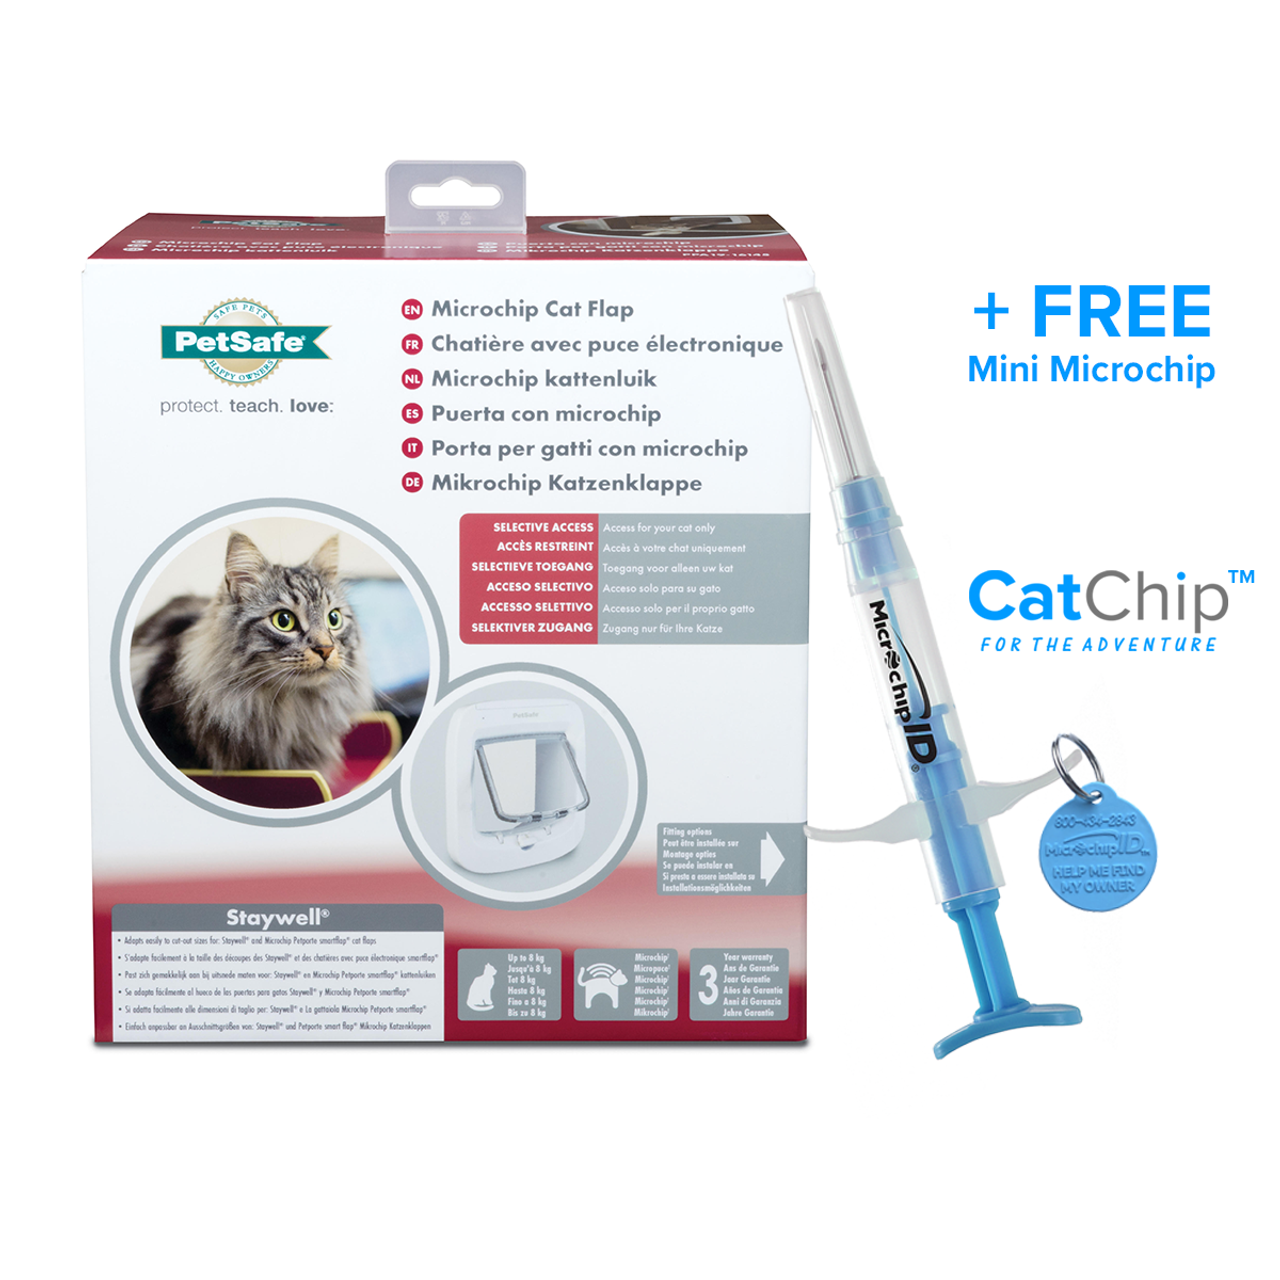 Razernij Stoffelijk overschot bijnaam PetSafe Microchip Cat Flap + Buddy-ID MINI Microchip 134kHz.